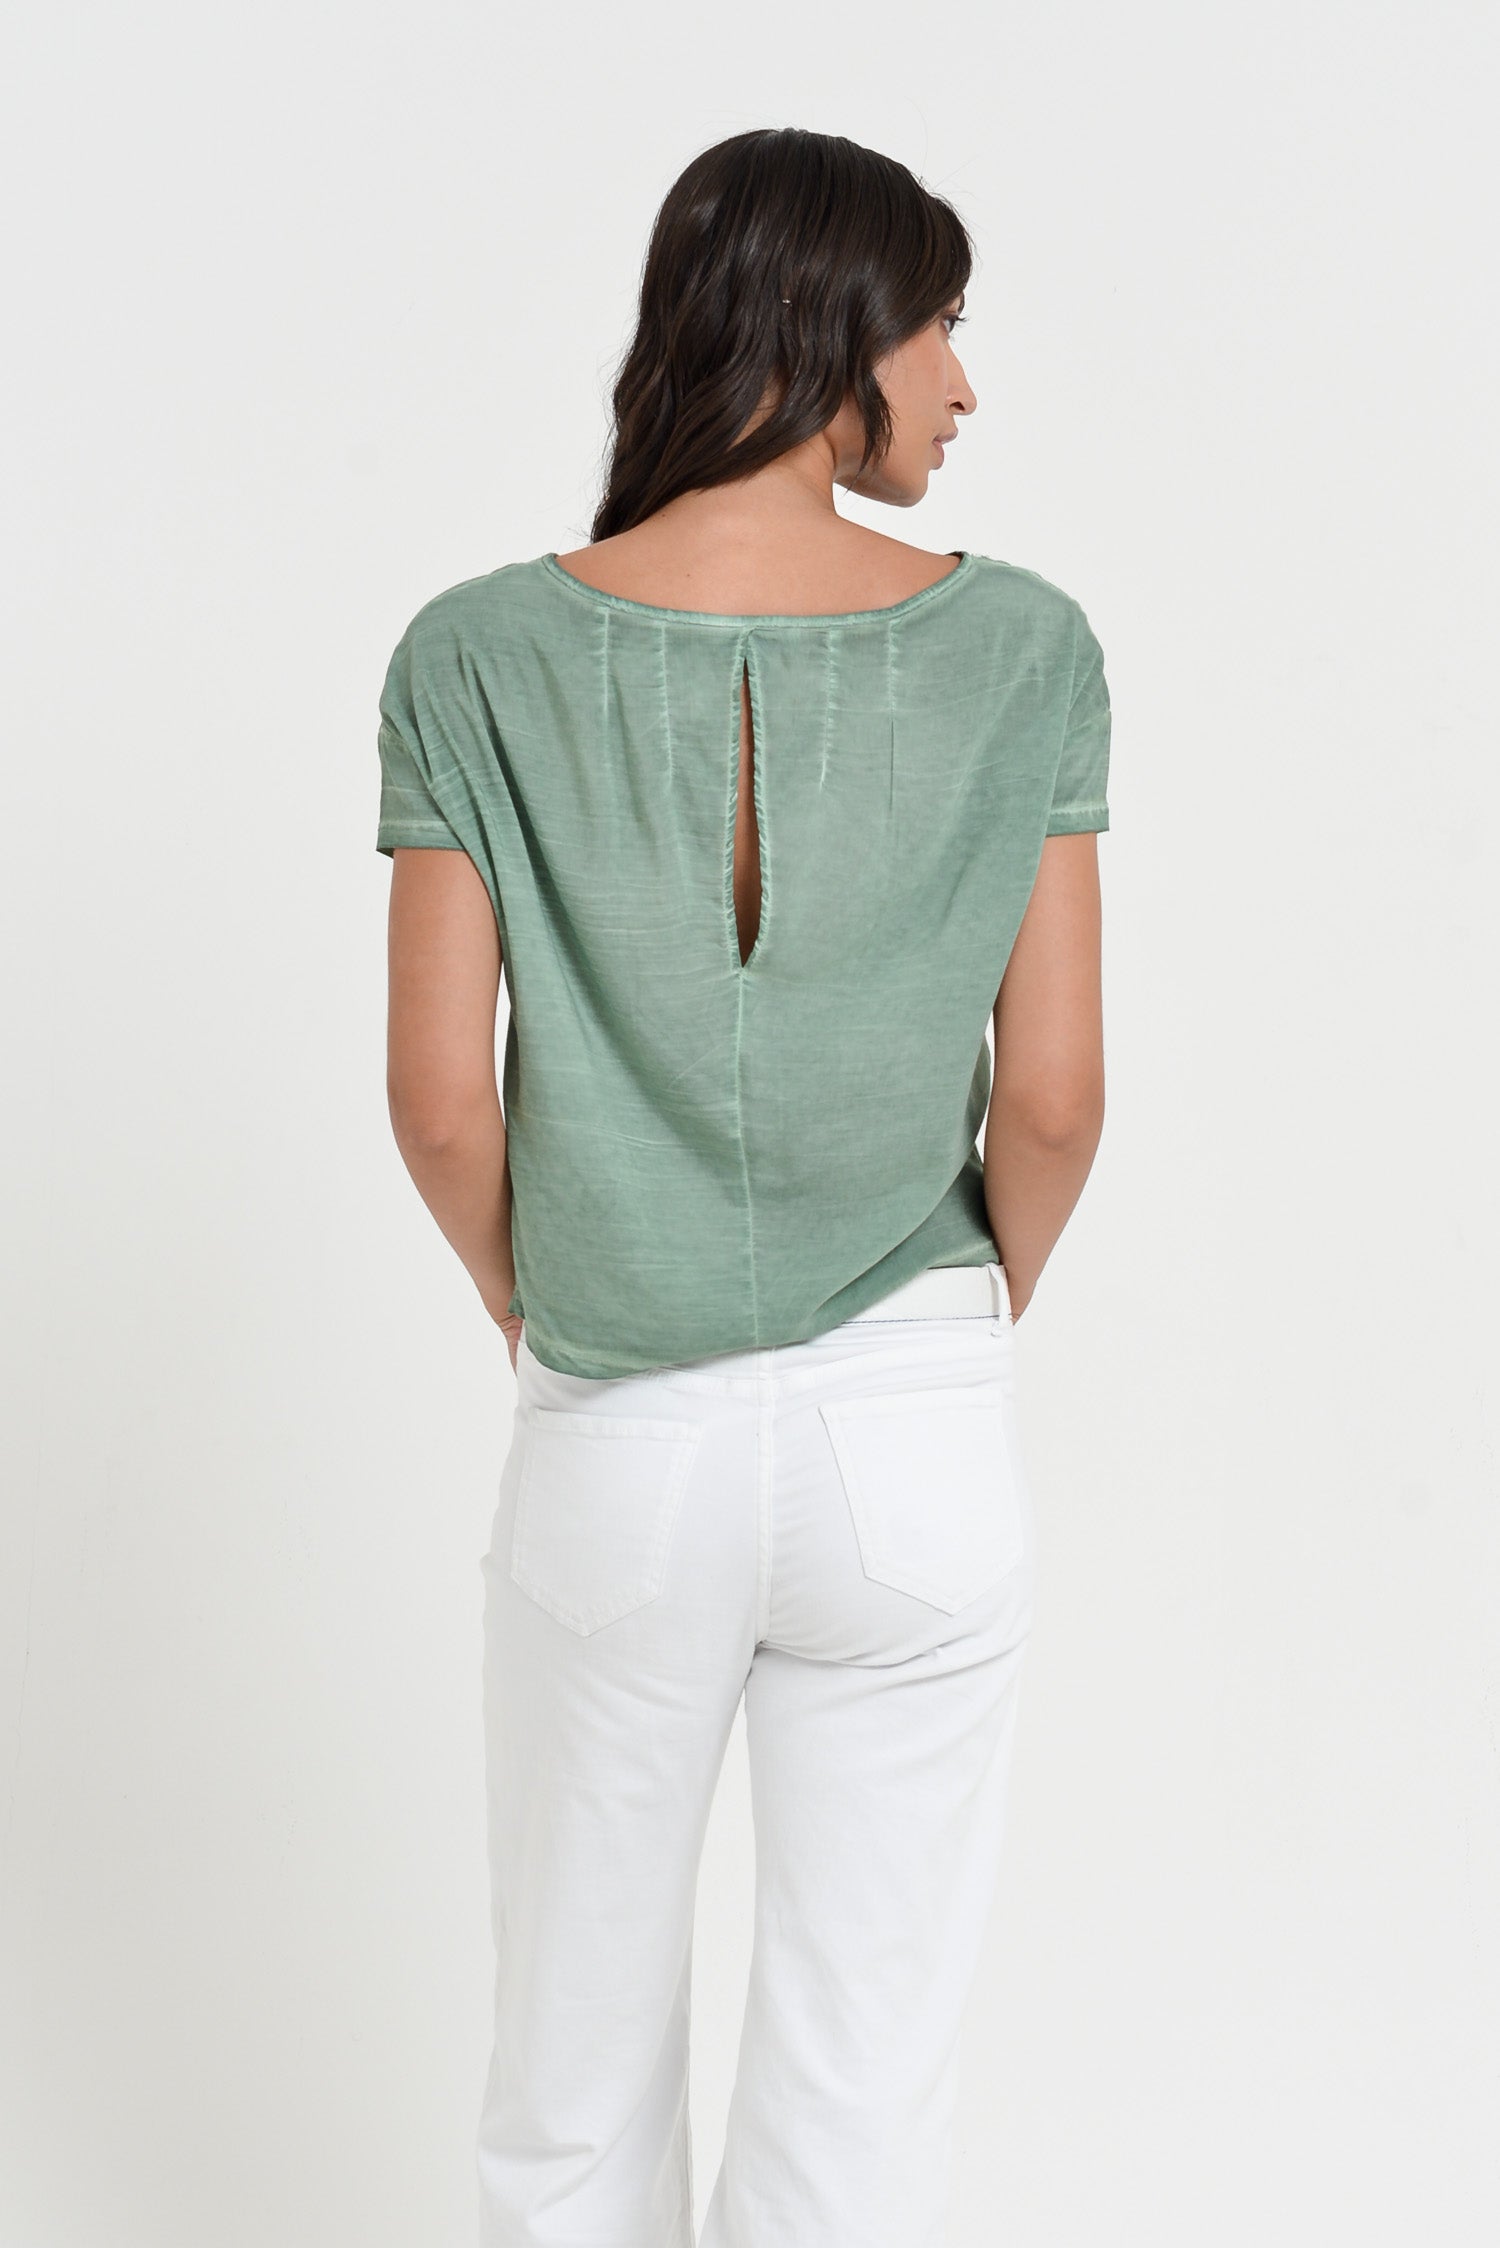 Cyprus T-Shirt - Women's Viscose T-Shirt - Juniper